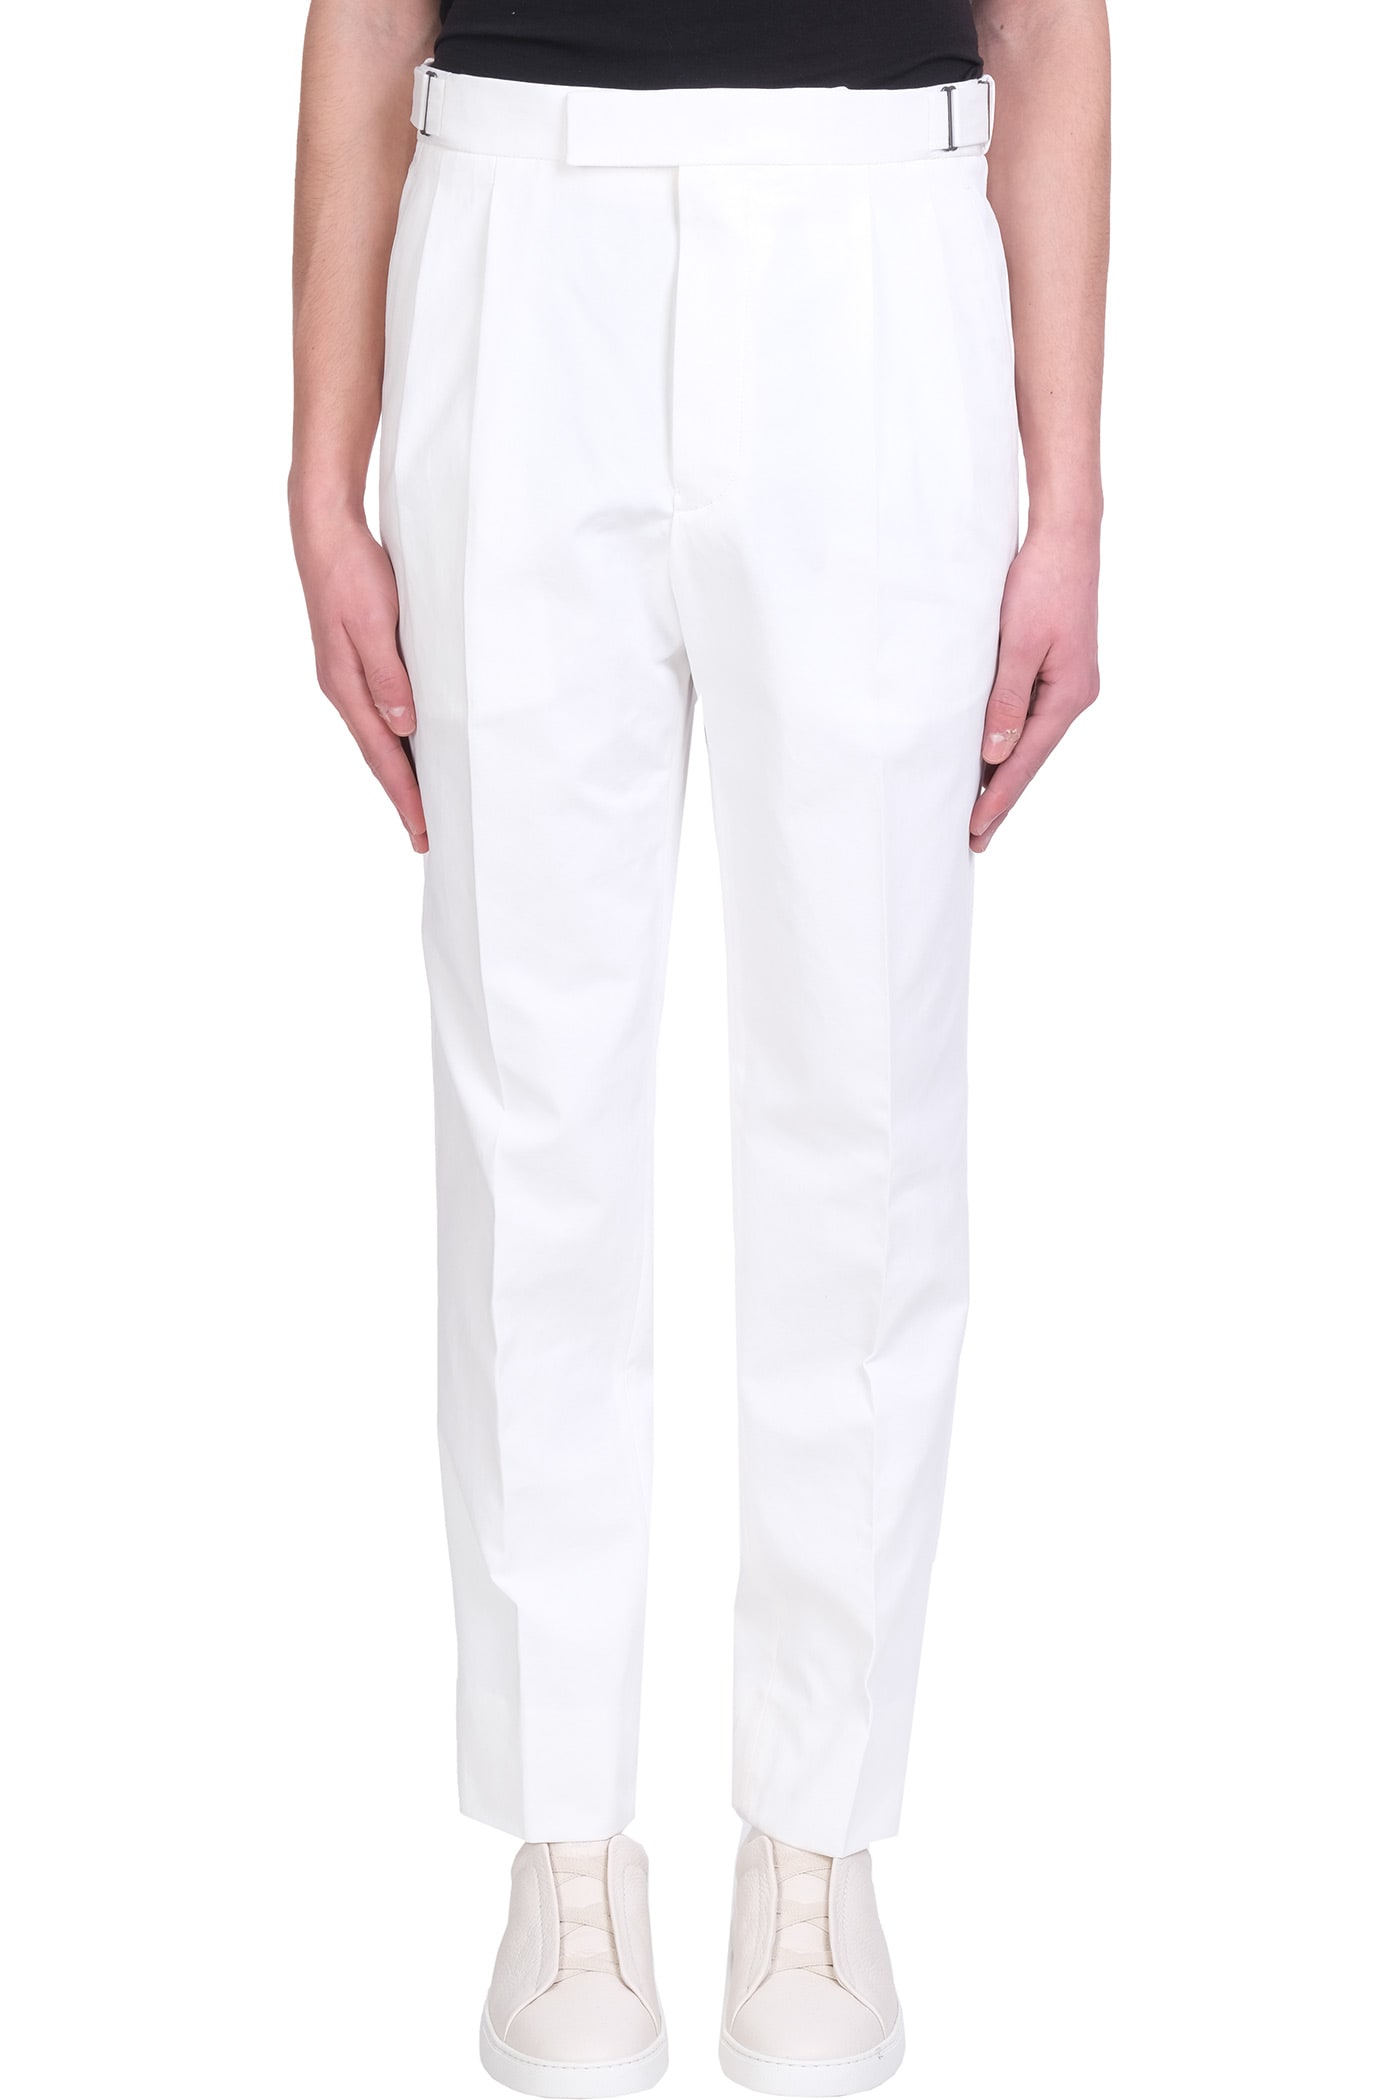 Ermenegildo Zegna Pants In White Cotton